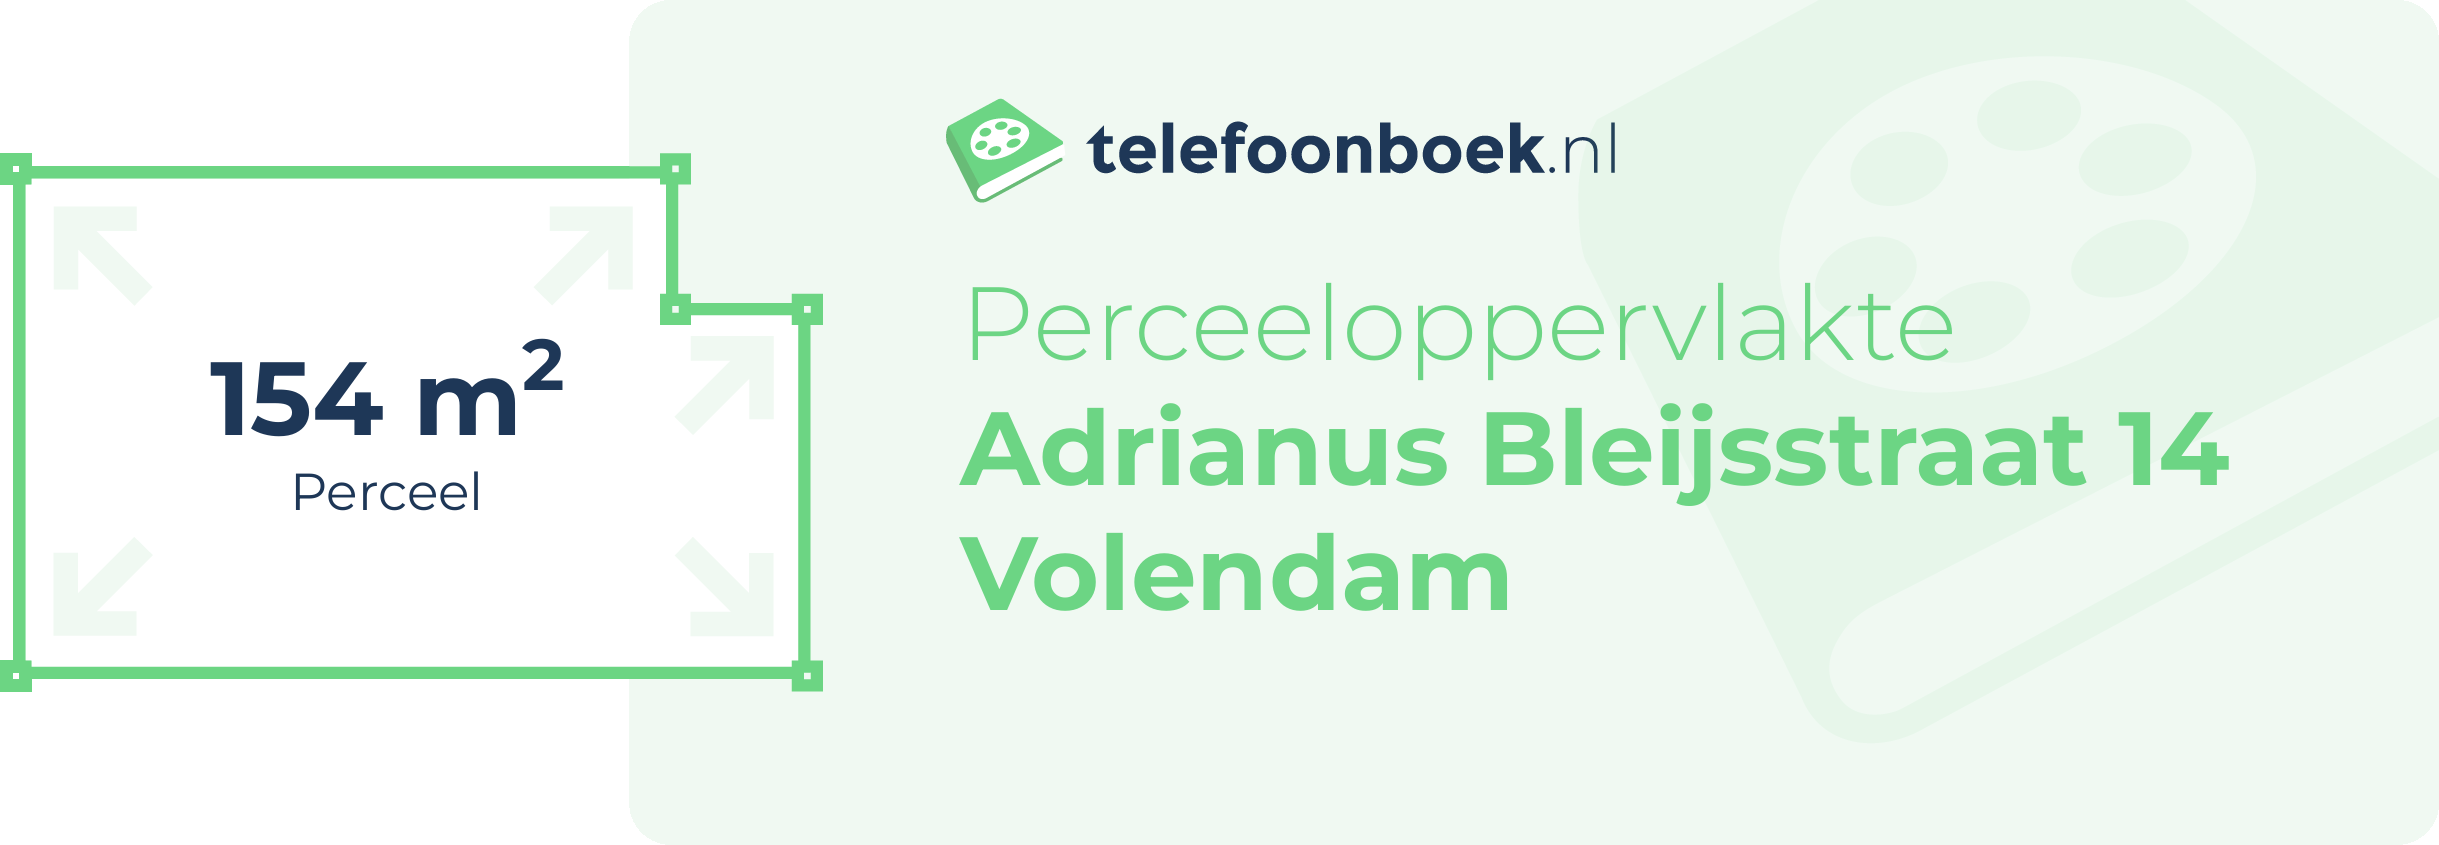 Perceeloppervlakte Adrianus Bleijsstraat 14 Volendam